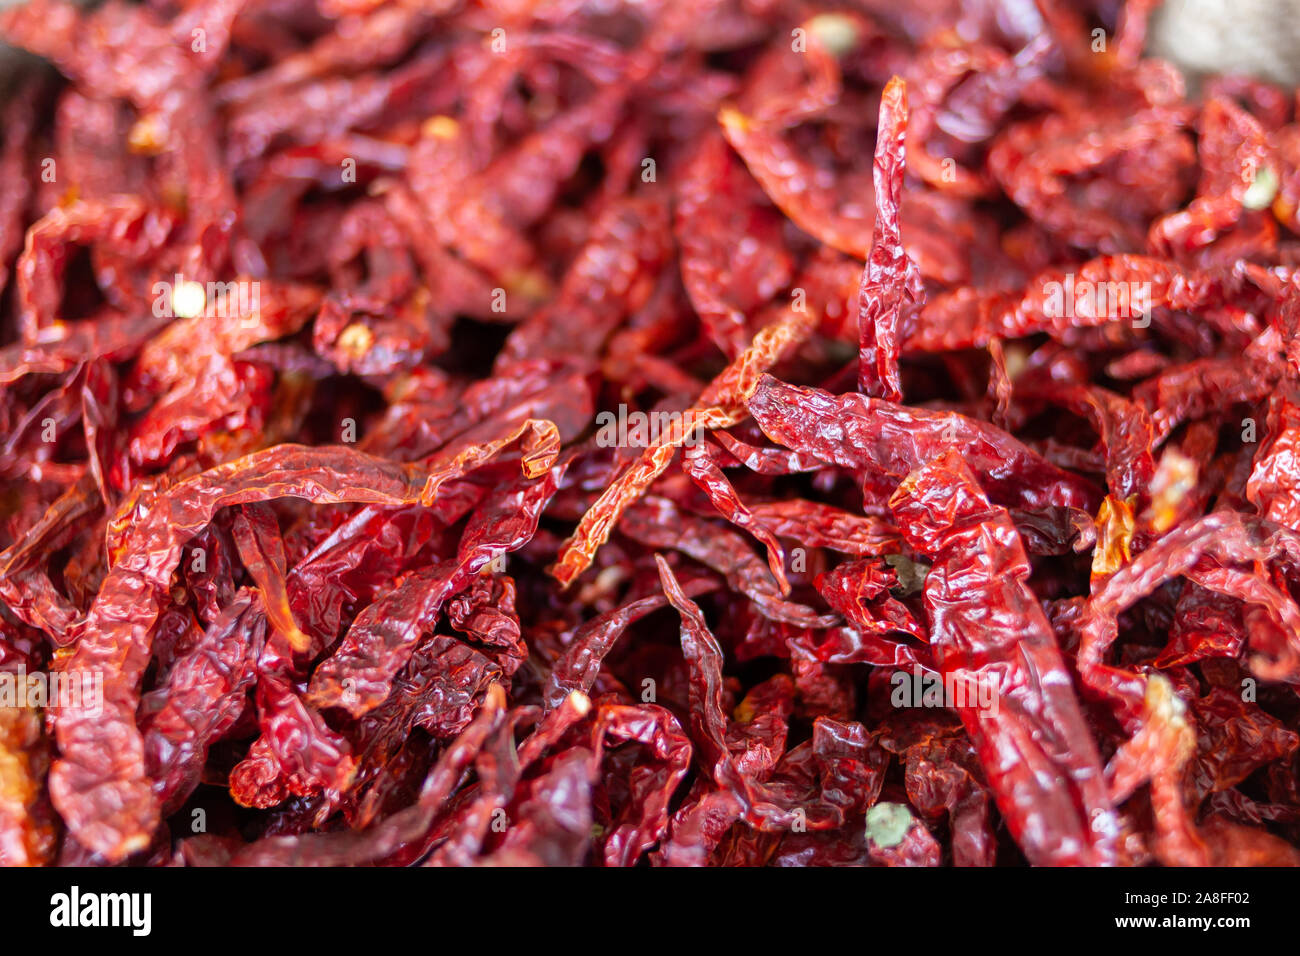 Getrocknete rote Chilis für heiße und würzige Speisen. Typisch für die asiatischen Märkte, in denen sie in großen Mengen gefunden werden. Stockfoto